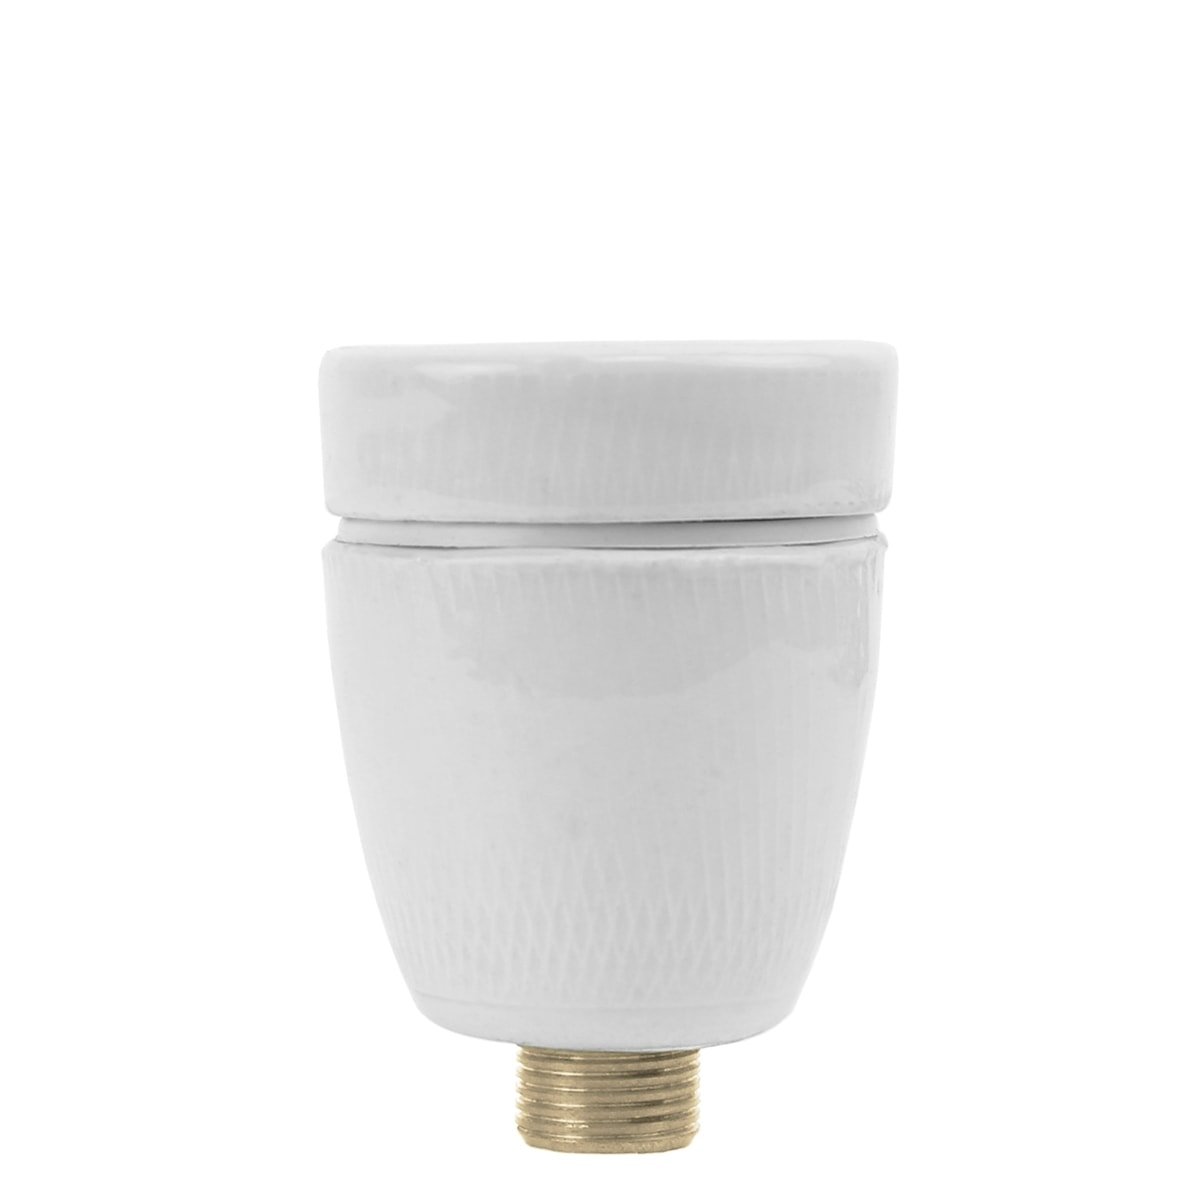 Løst porcelæn lampeholder E27 3/8 - Ø 15.8 mm